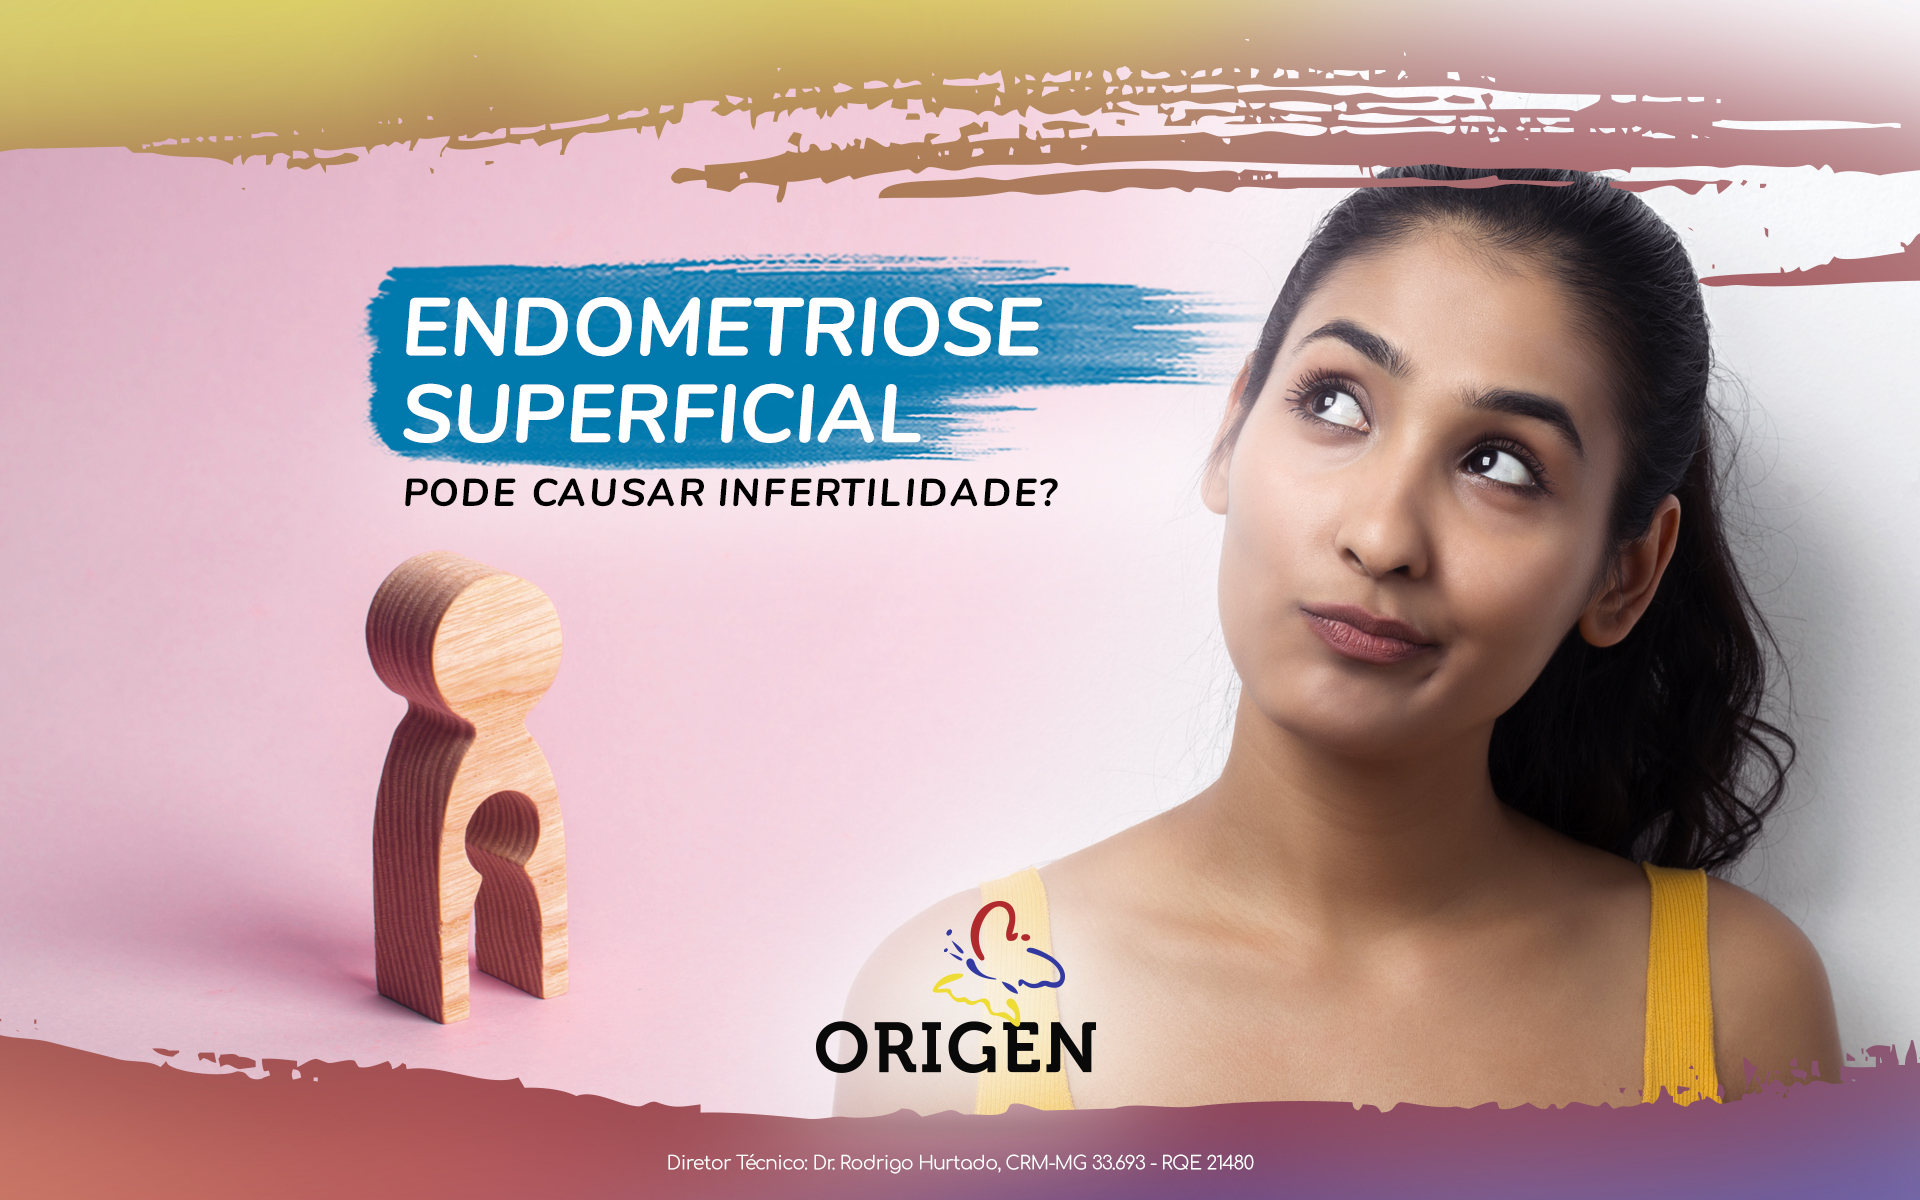 Endometriose superficial pode causar infertilidade?